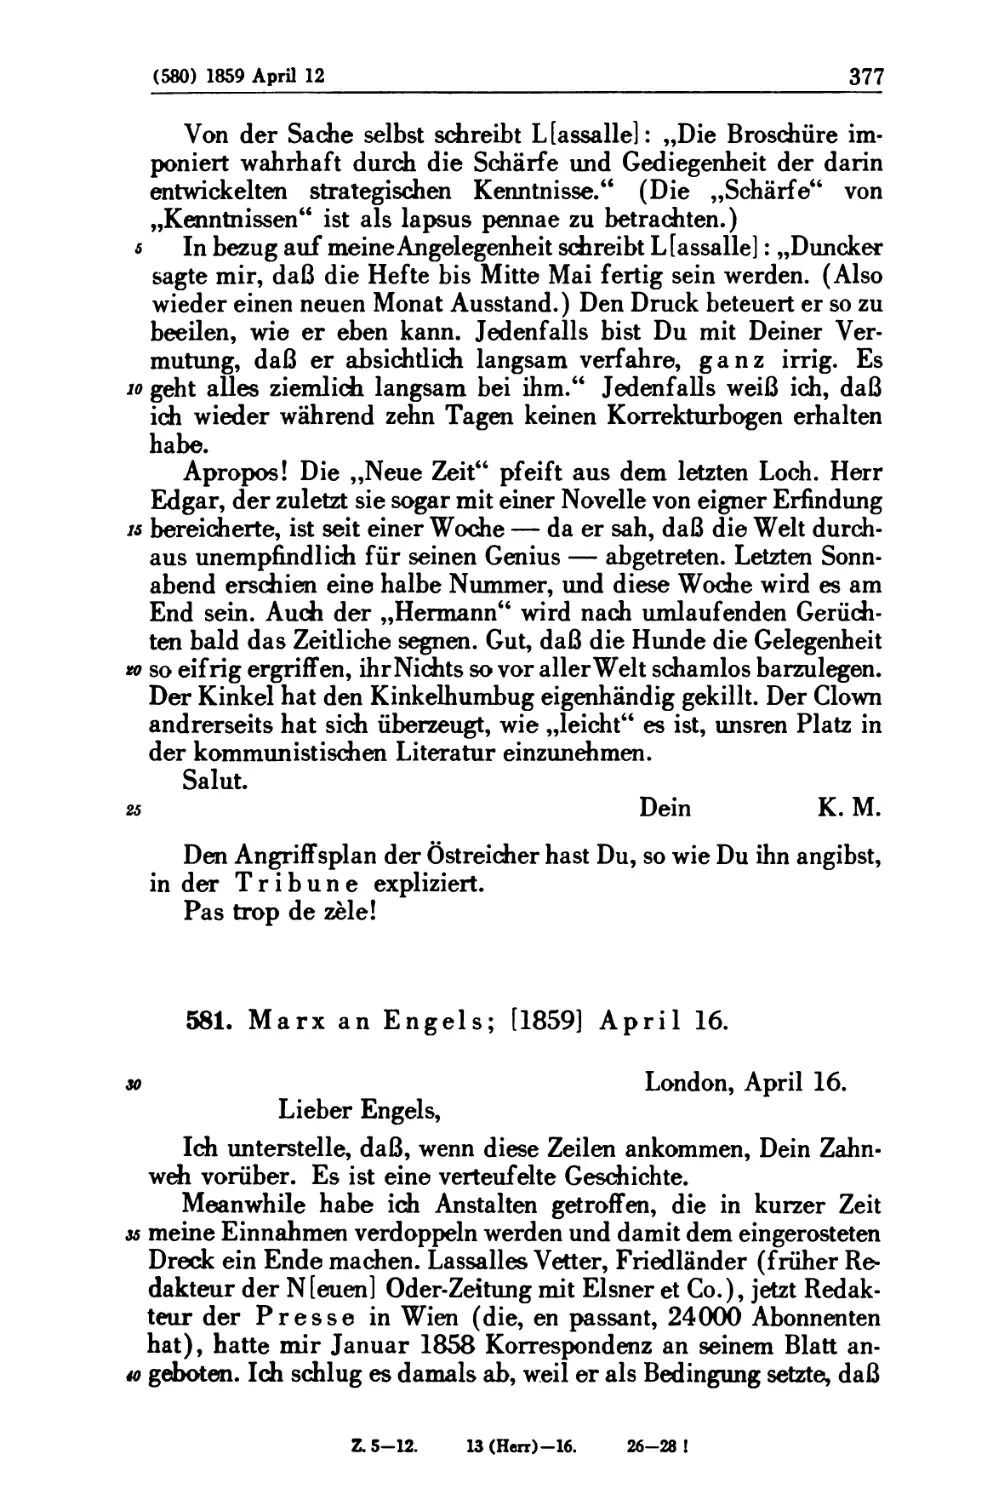 581. Marx an Engels; [1859] April 16